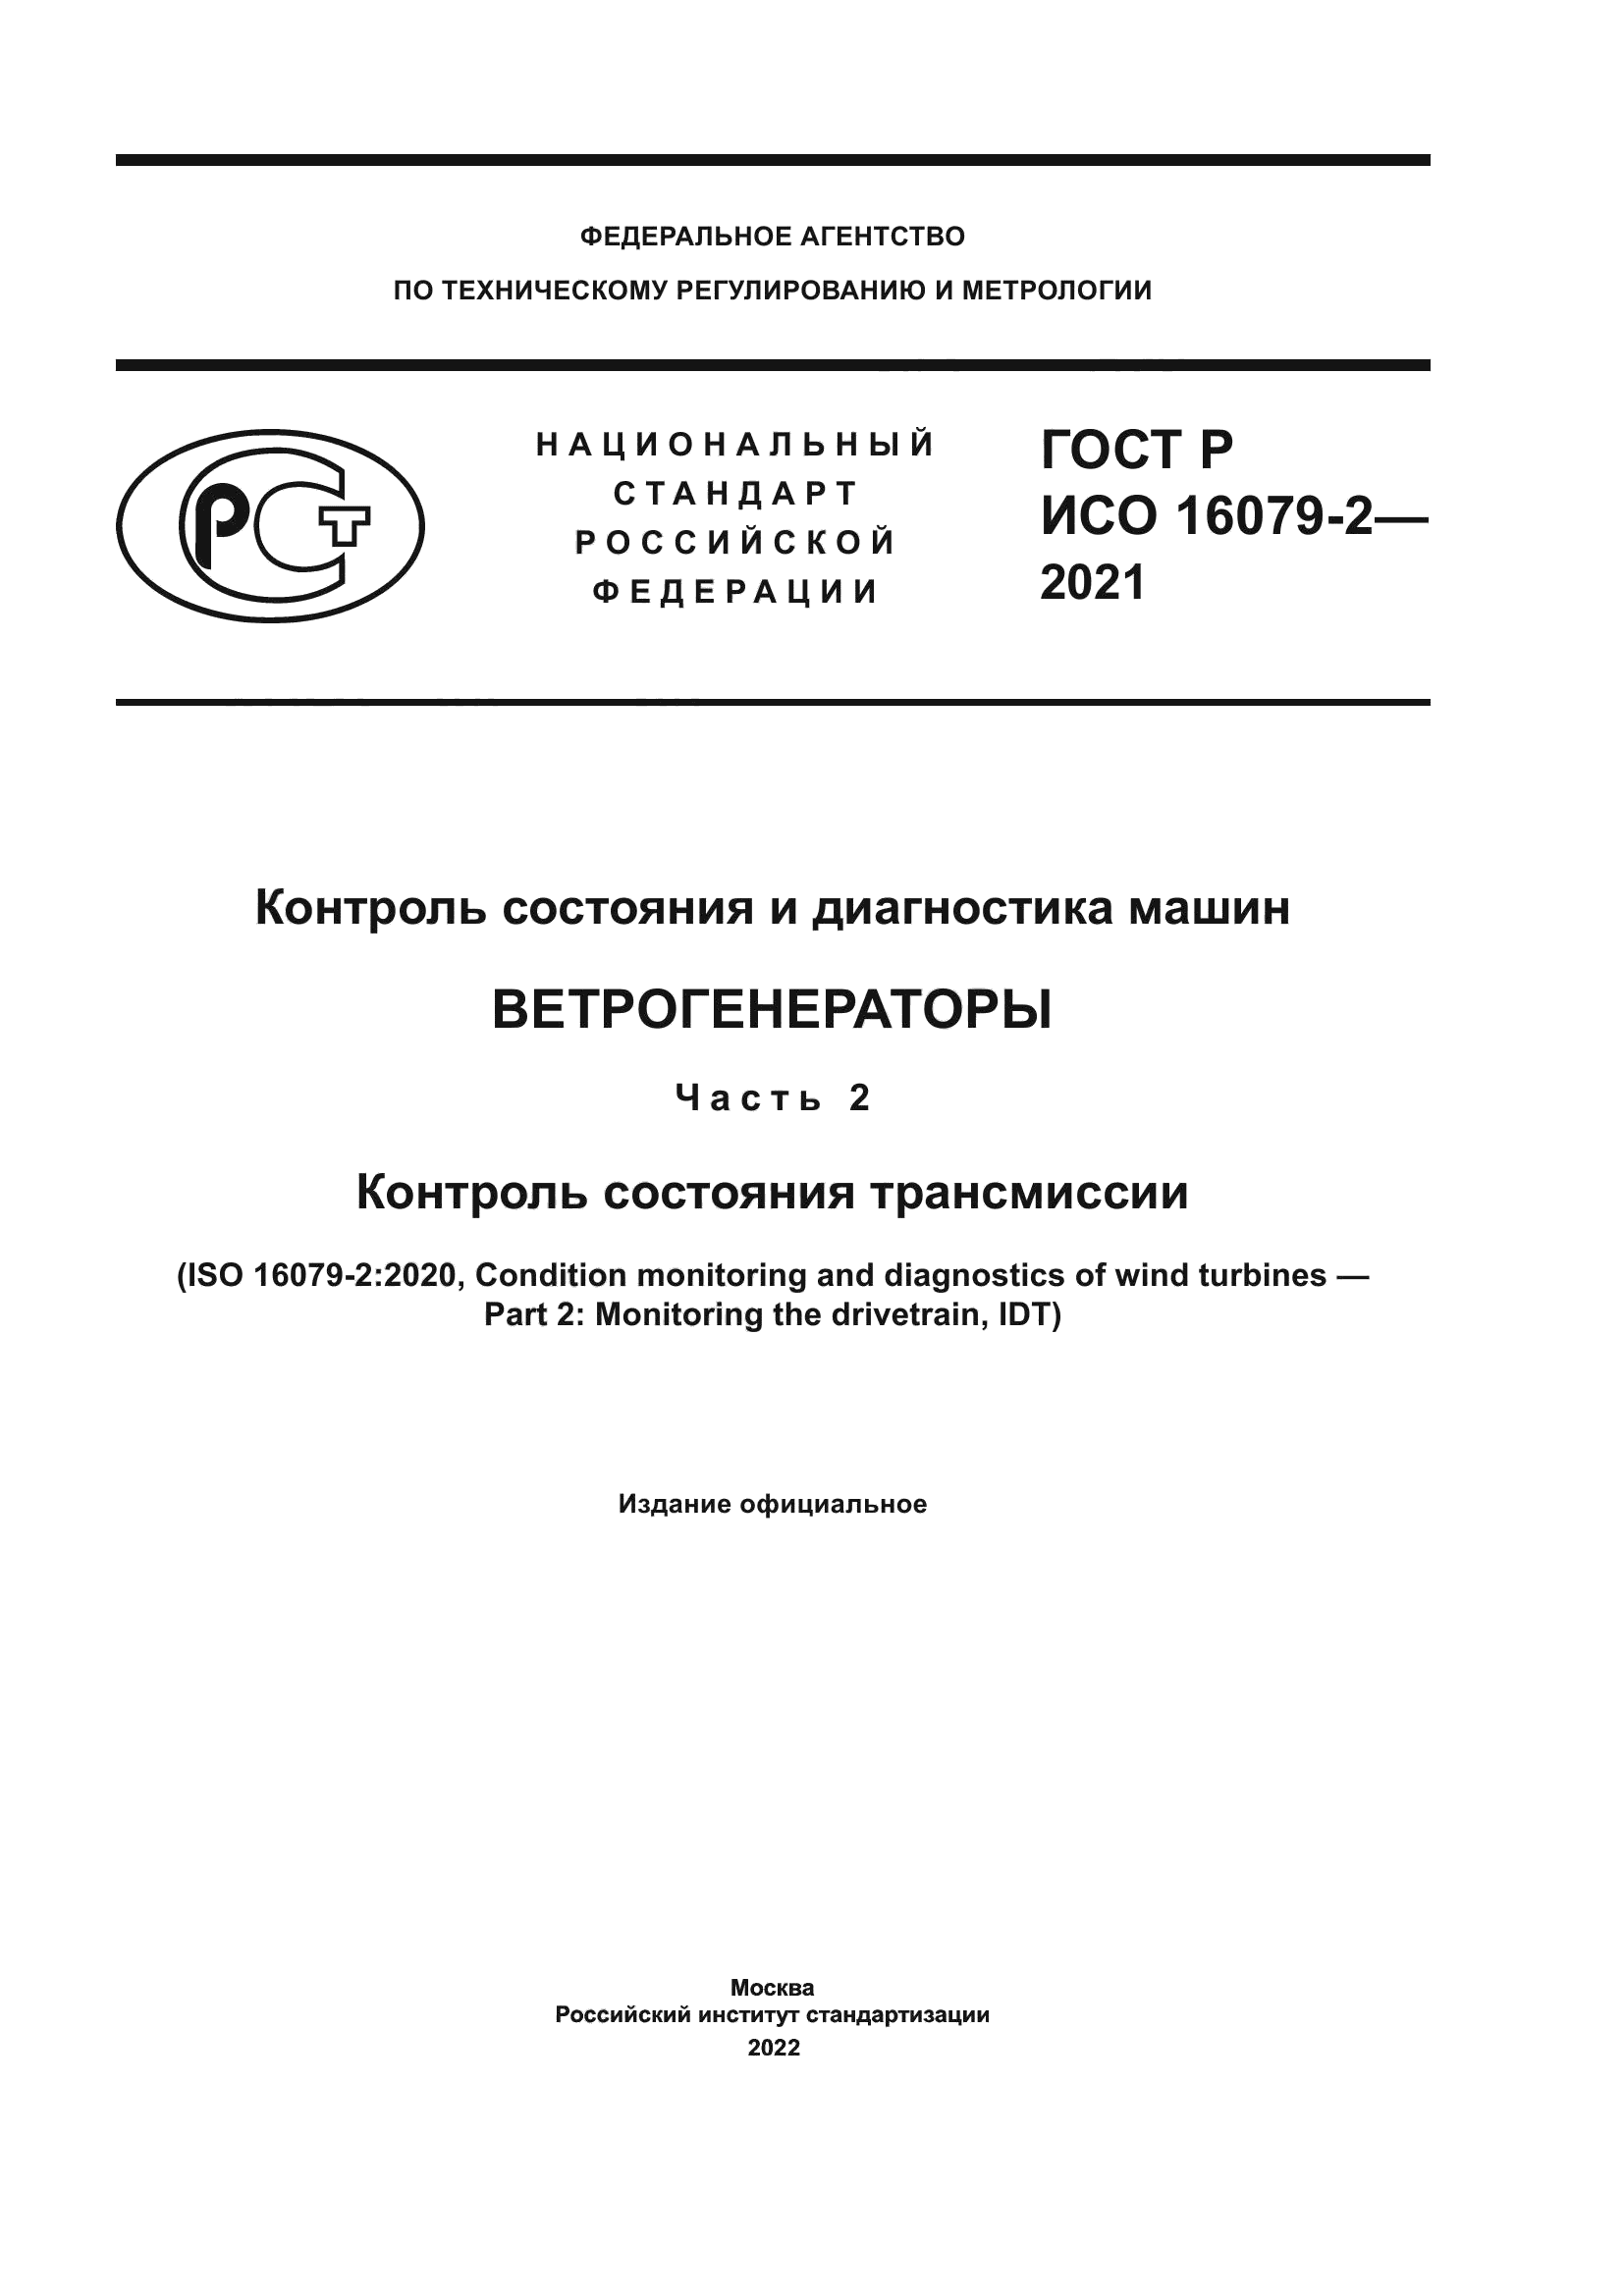 ГОСТ Р ИСО 16079-2-2021